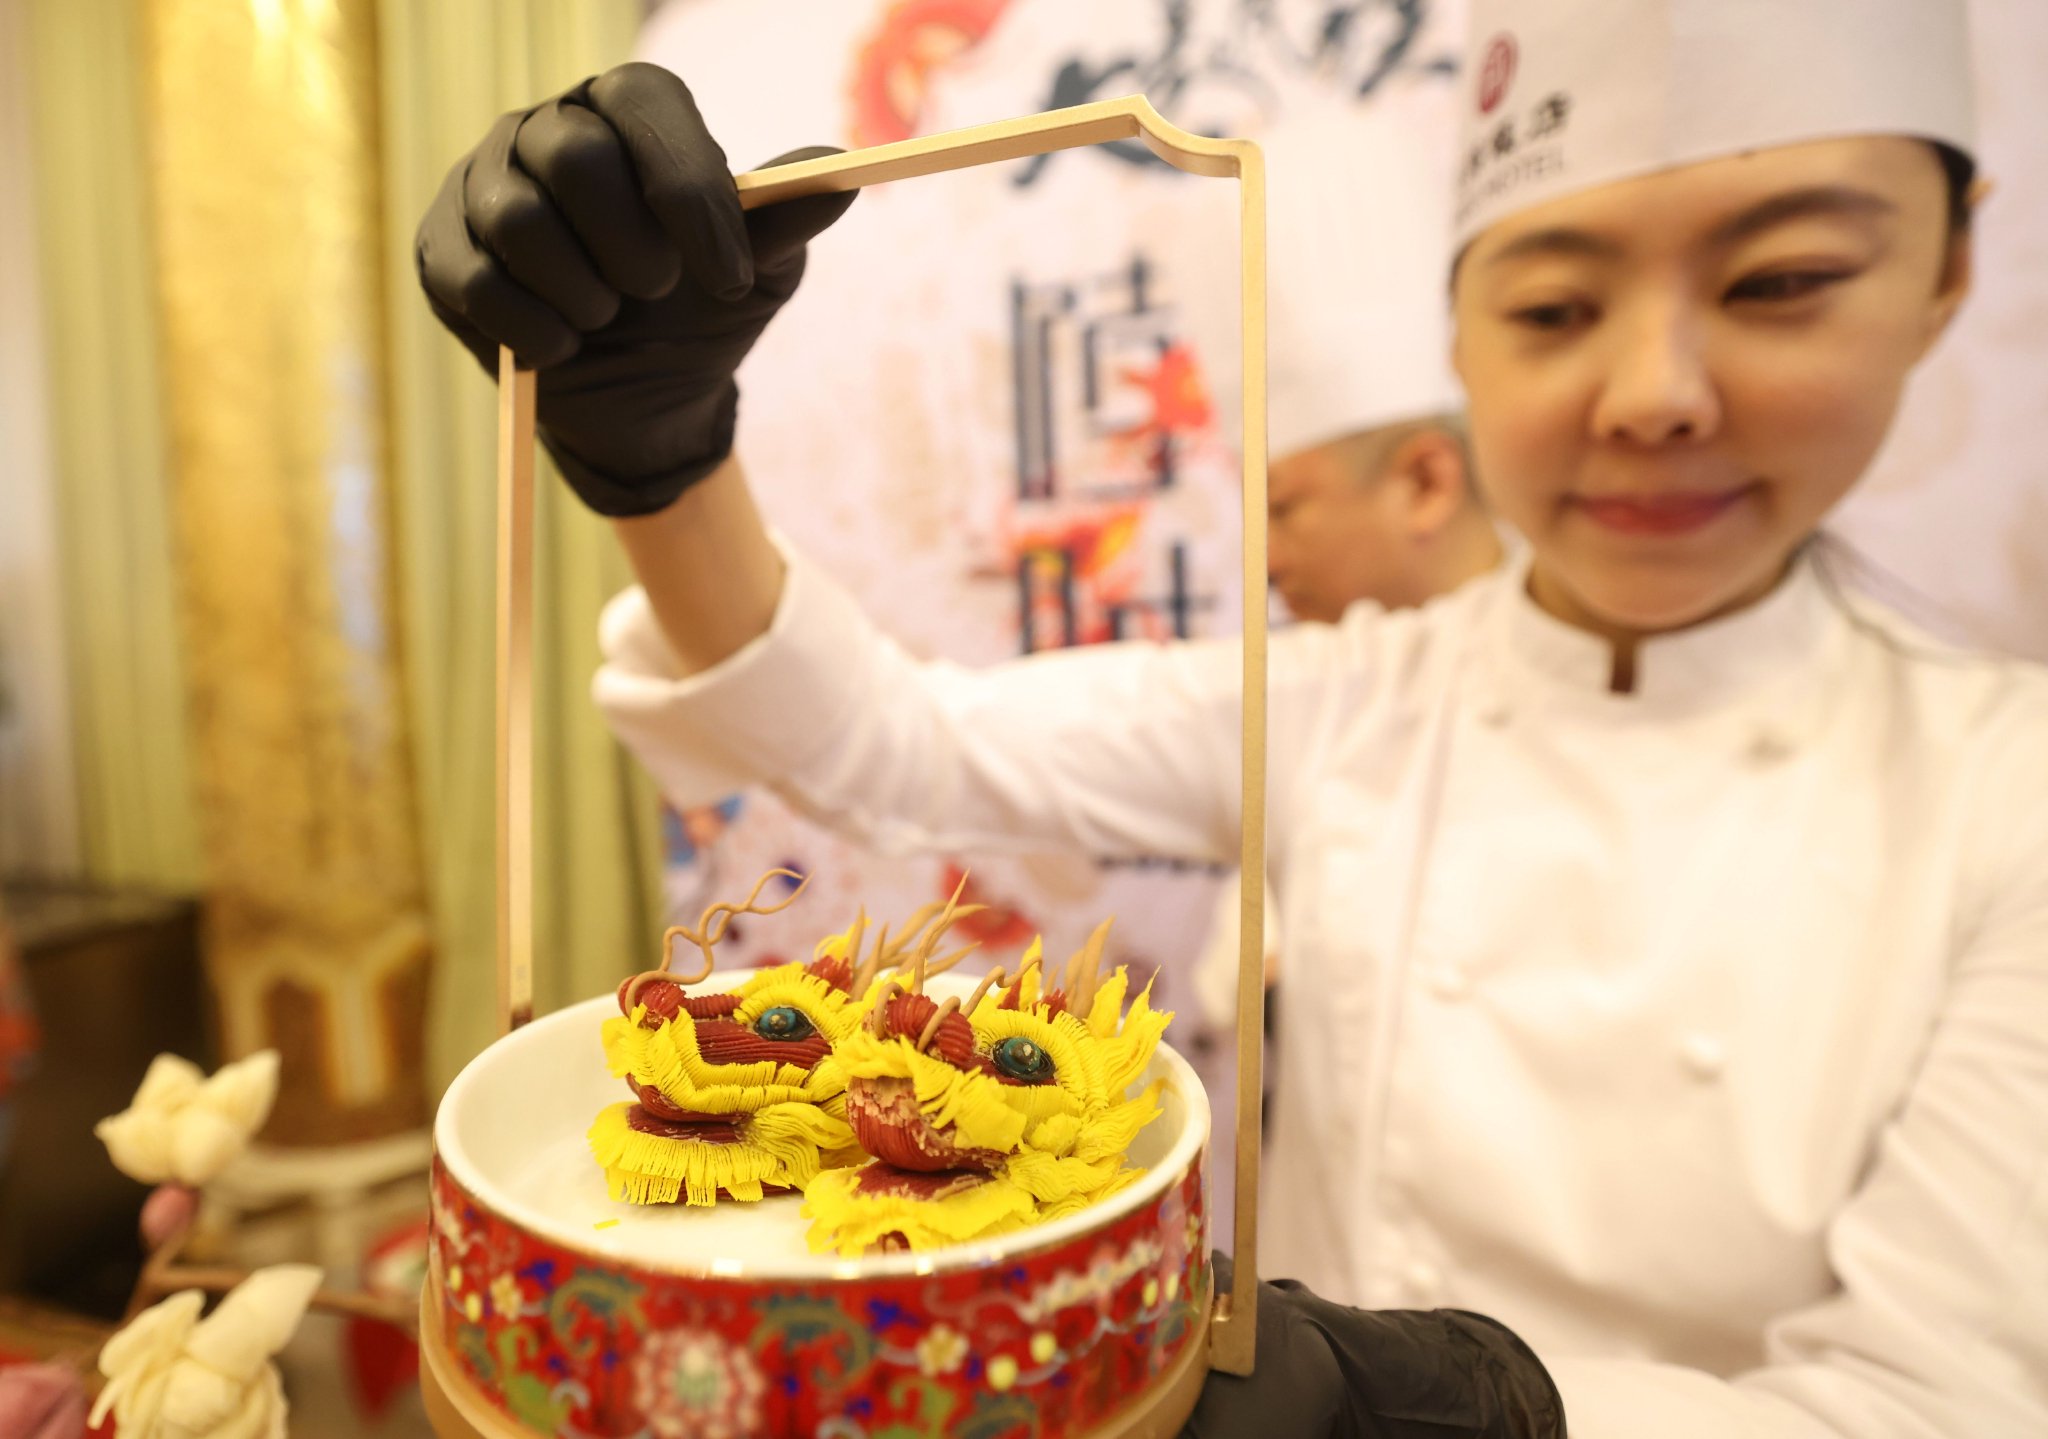 民族飯店糕點師展示精美糕點。新京報記者 王貴彬 攝